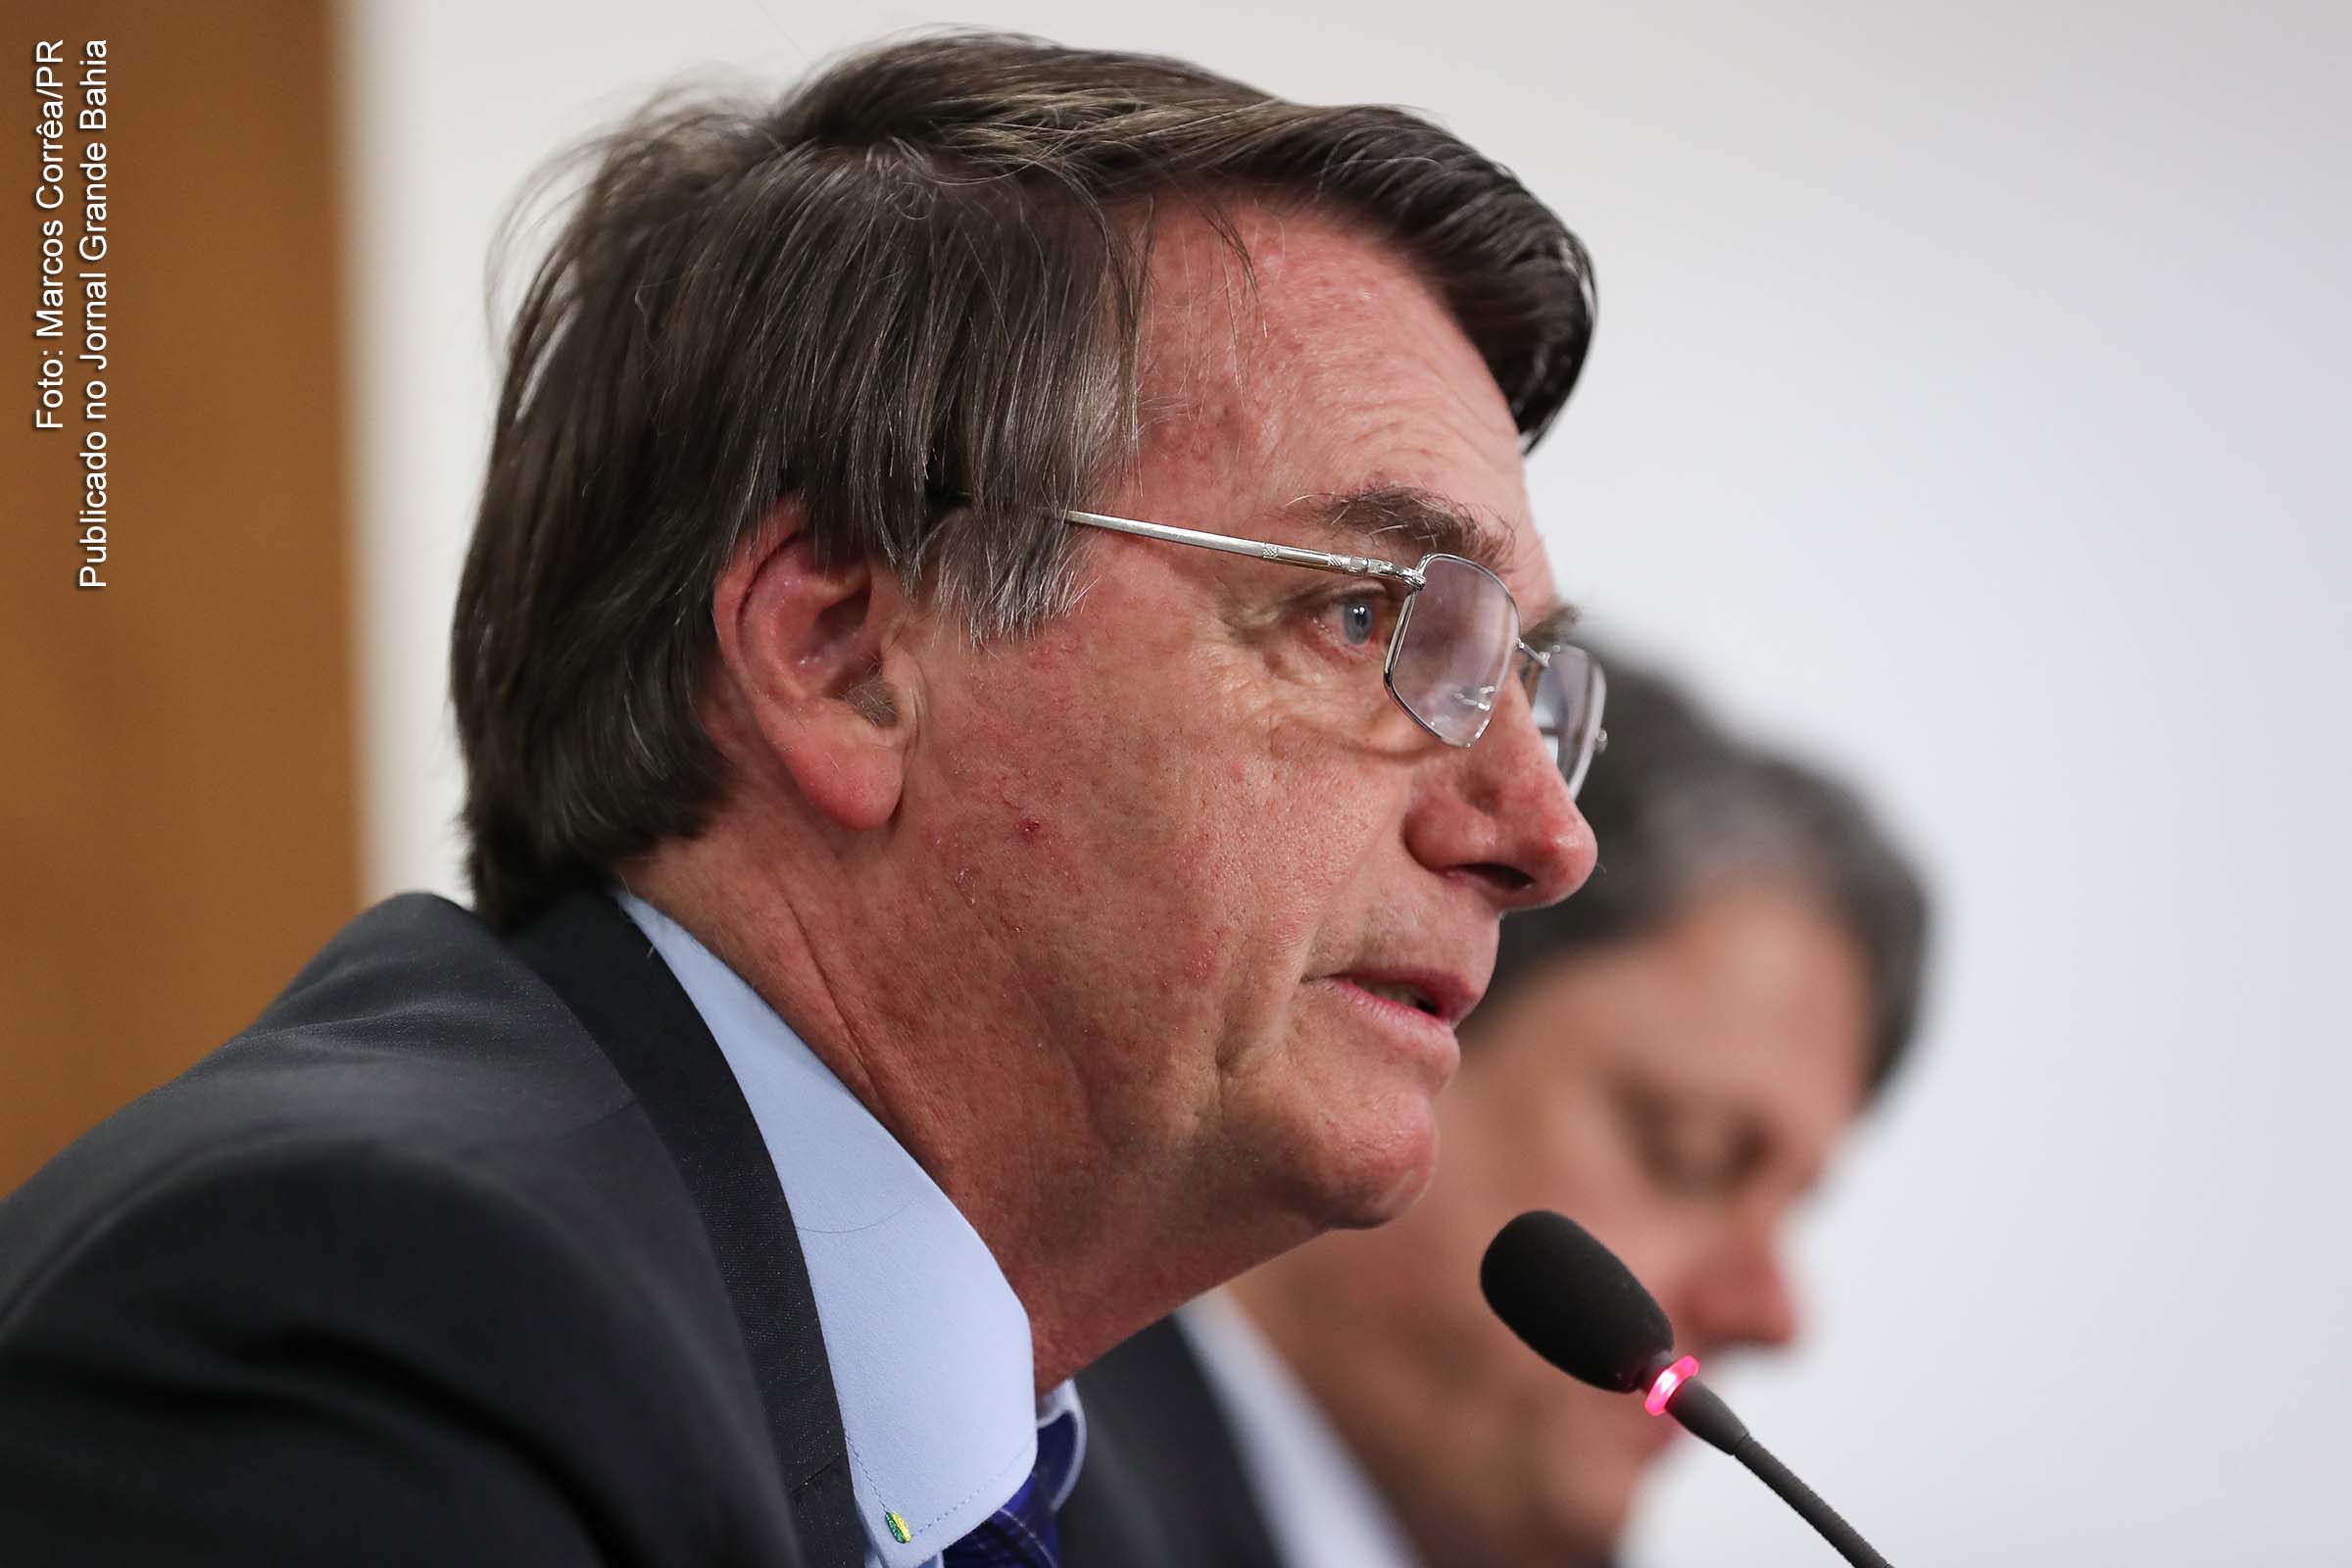 Extremista de direita, presidente Jair Bolsonaro se constitui em grave ameaça a democracia do Brasil.